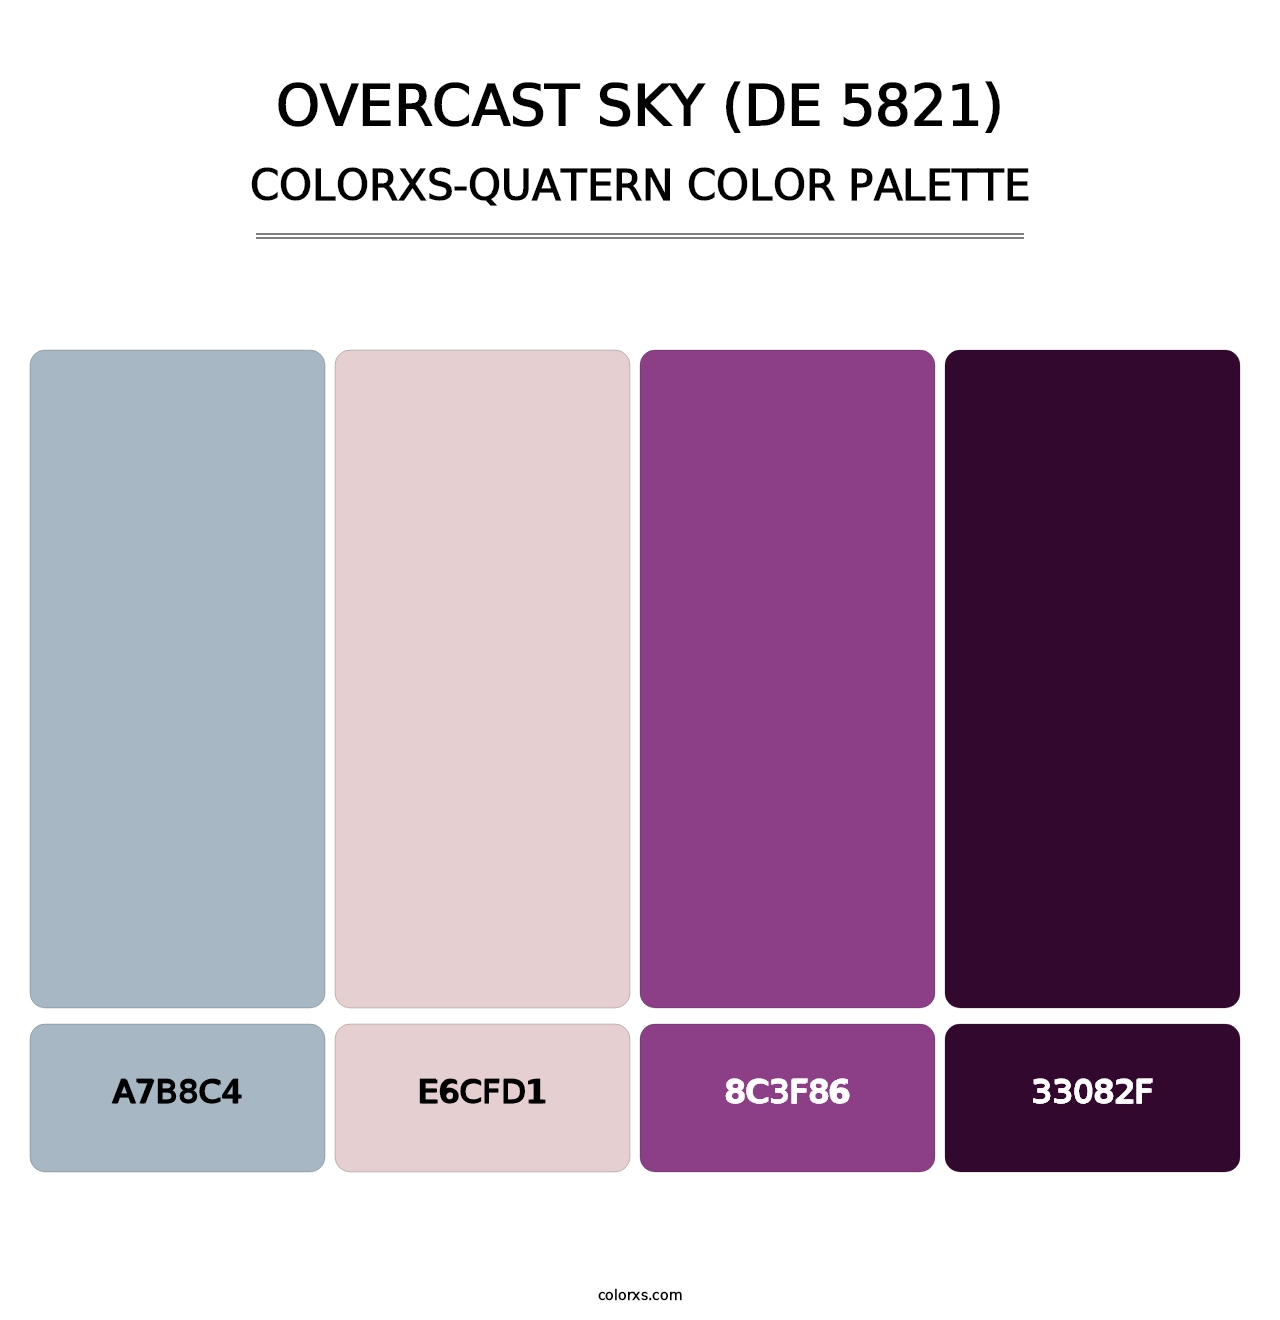 Overcast Sky (DE 5821) - Colorxs Quatern Palette